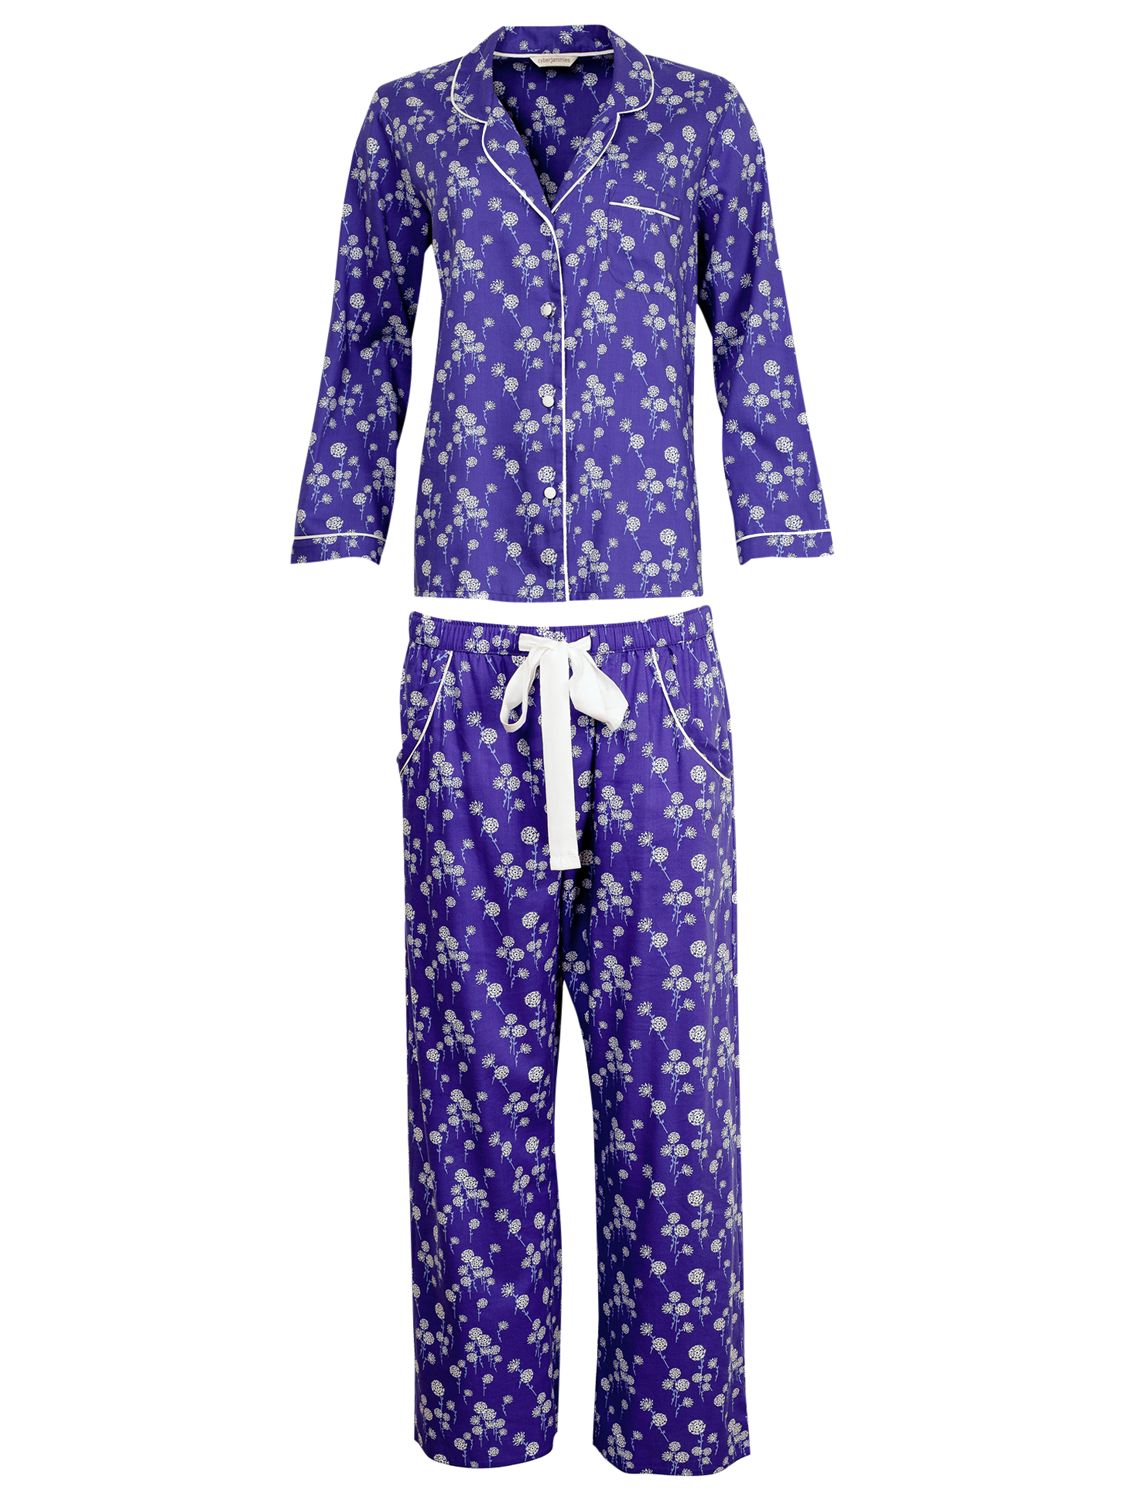 Pyjama Sets | Women's Nightwear | John Lewis